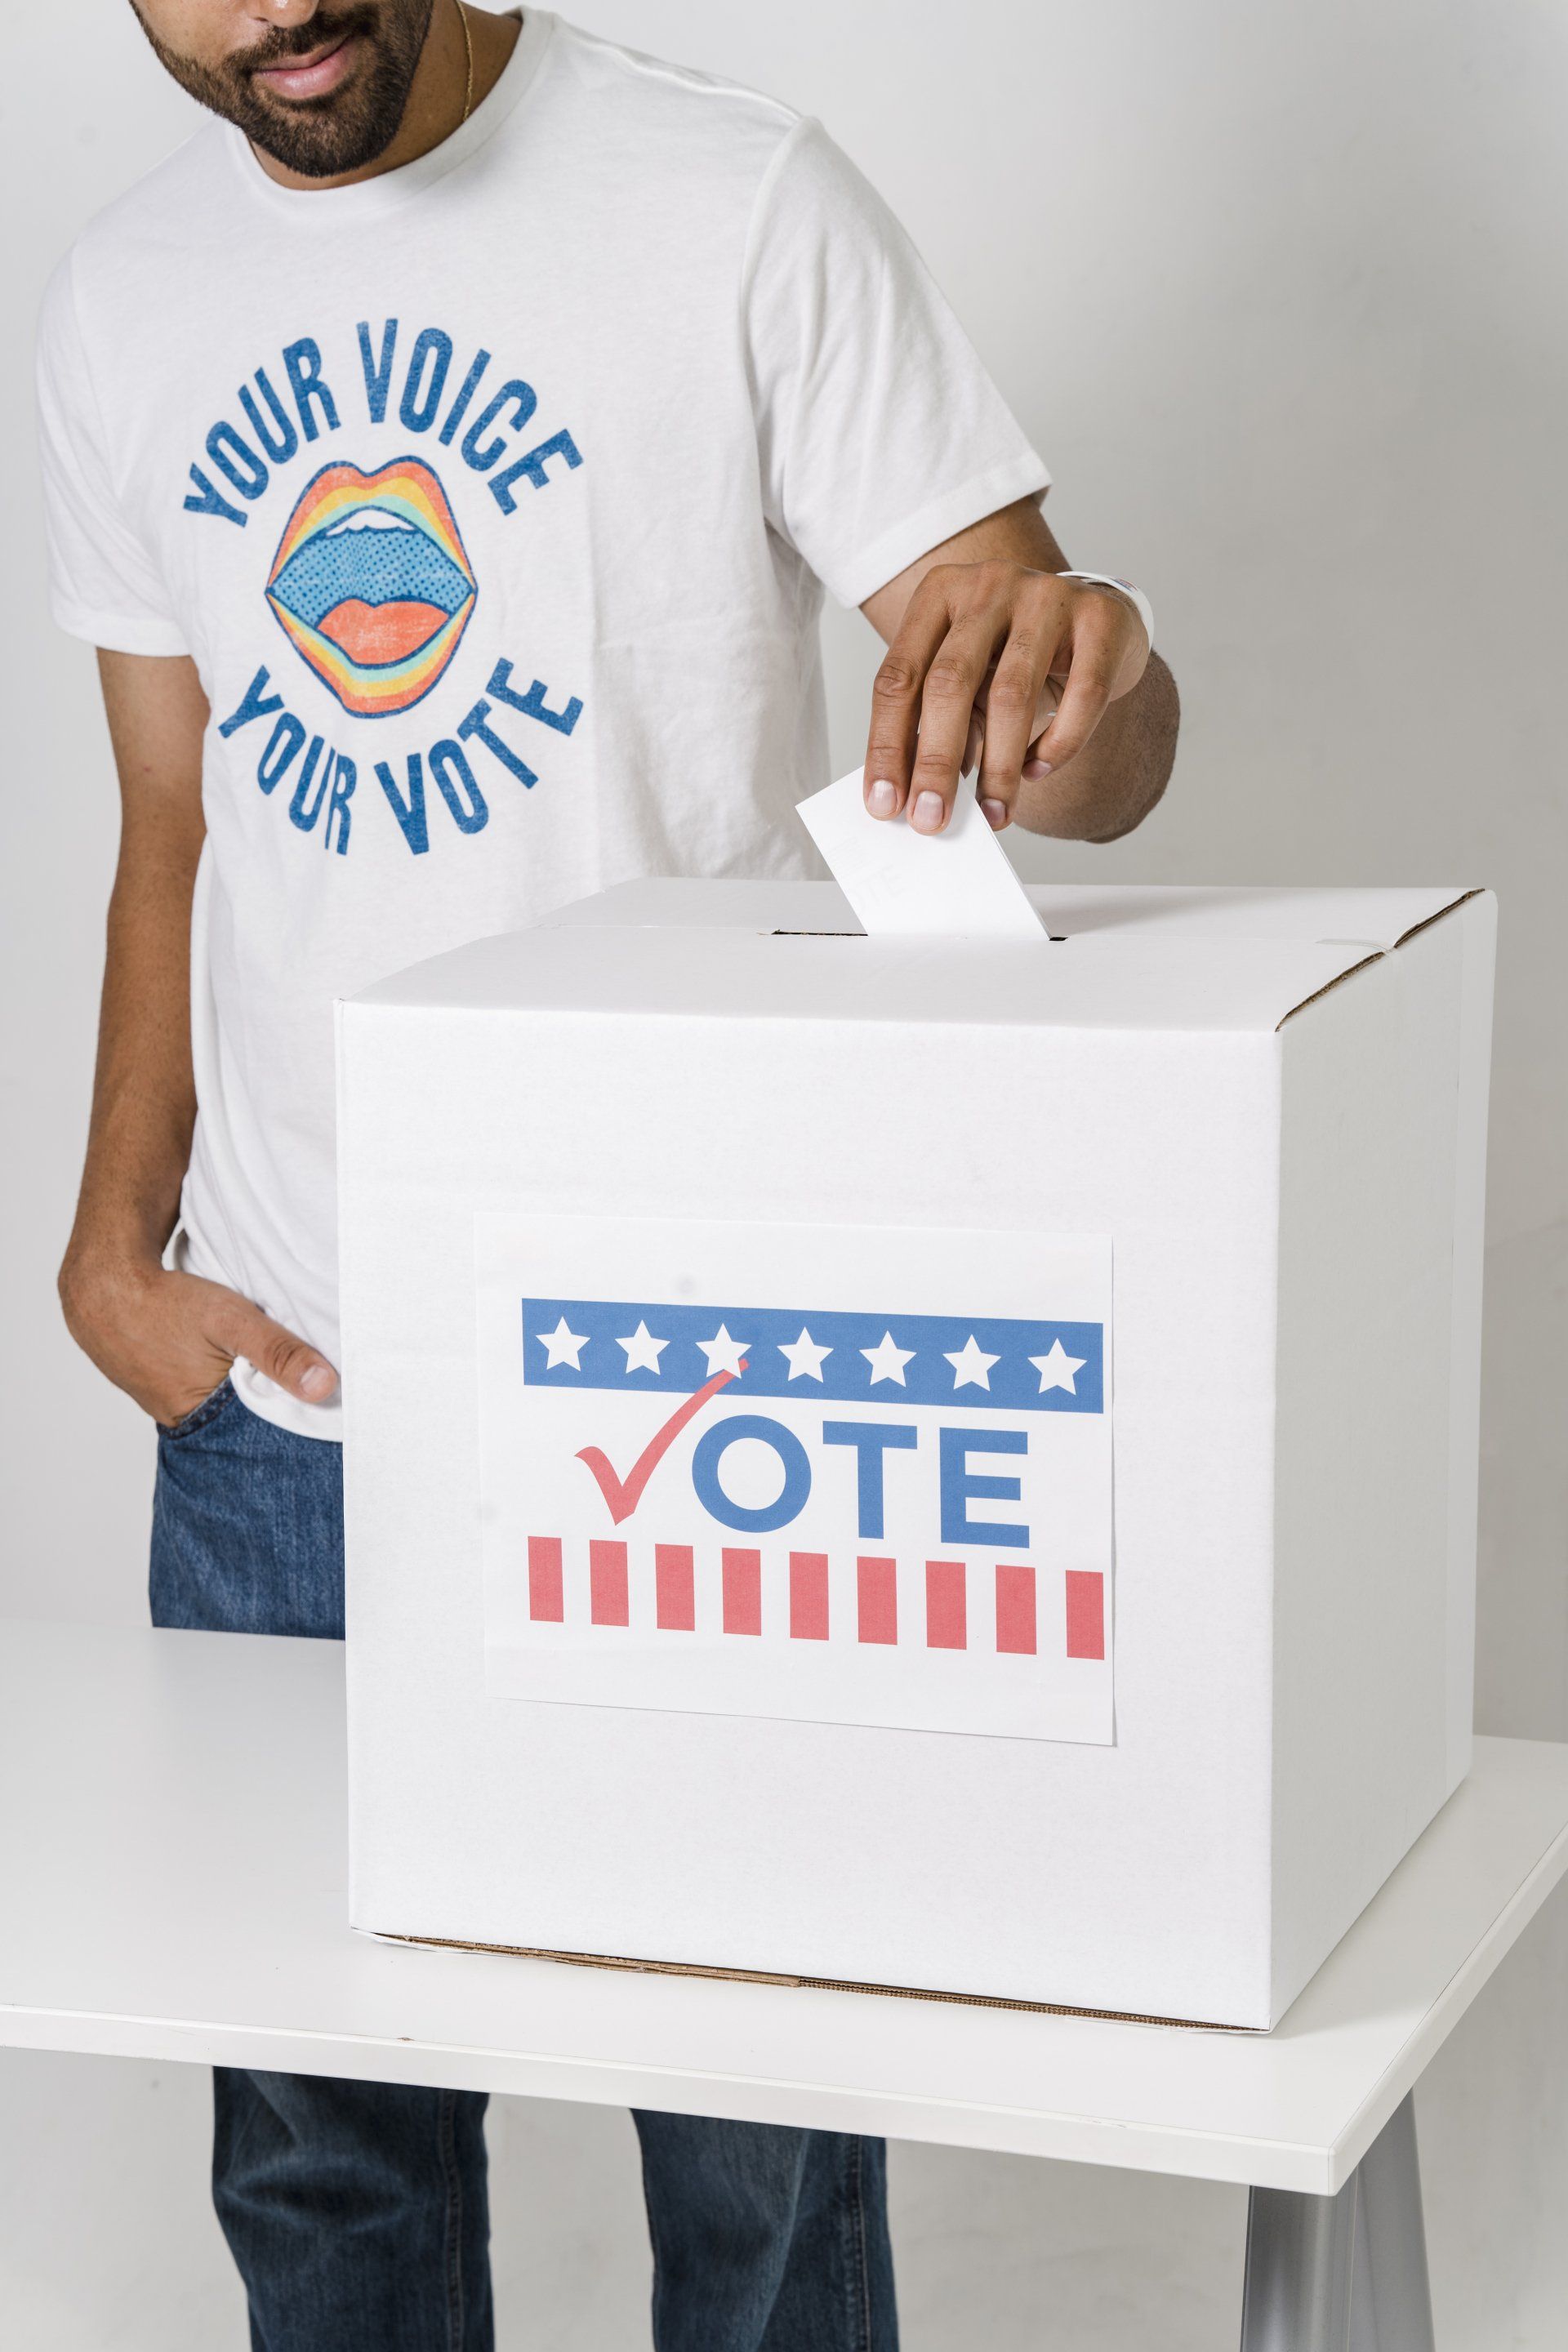 A man places his ballot into a ballot box